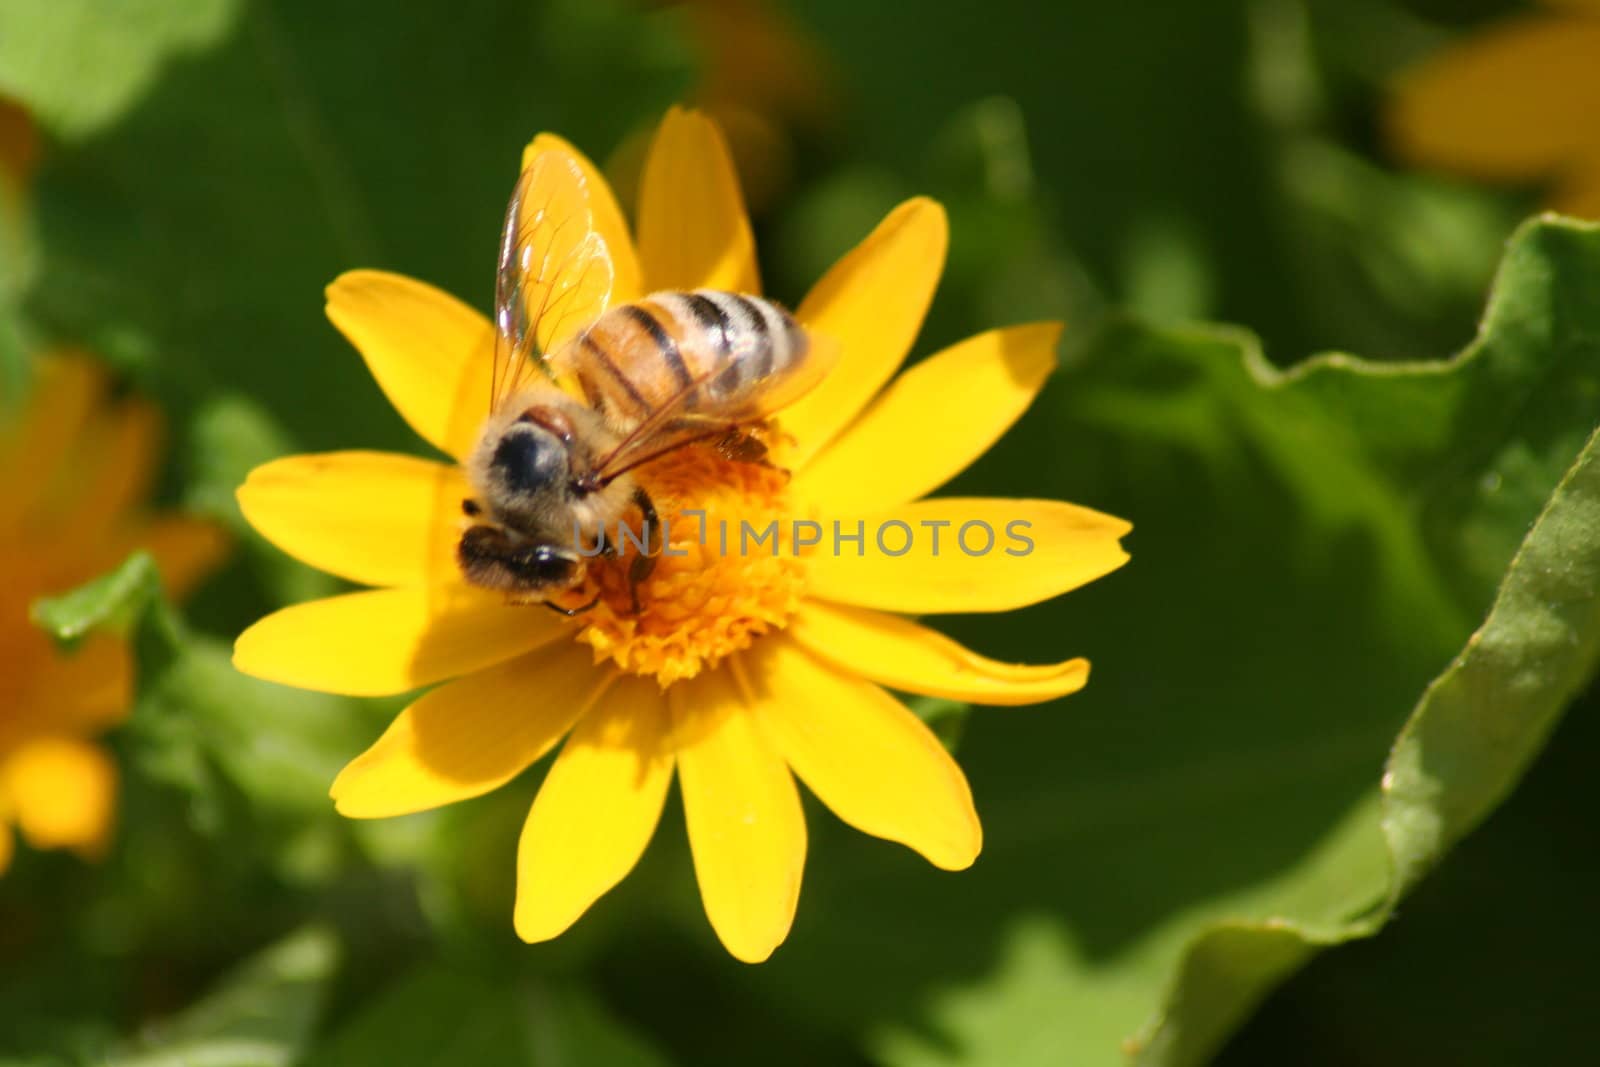 Bee on flower by ronlan